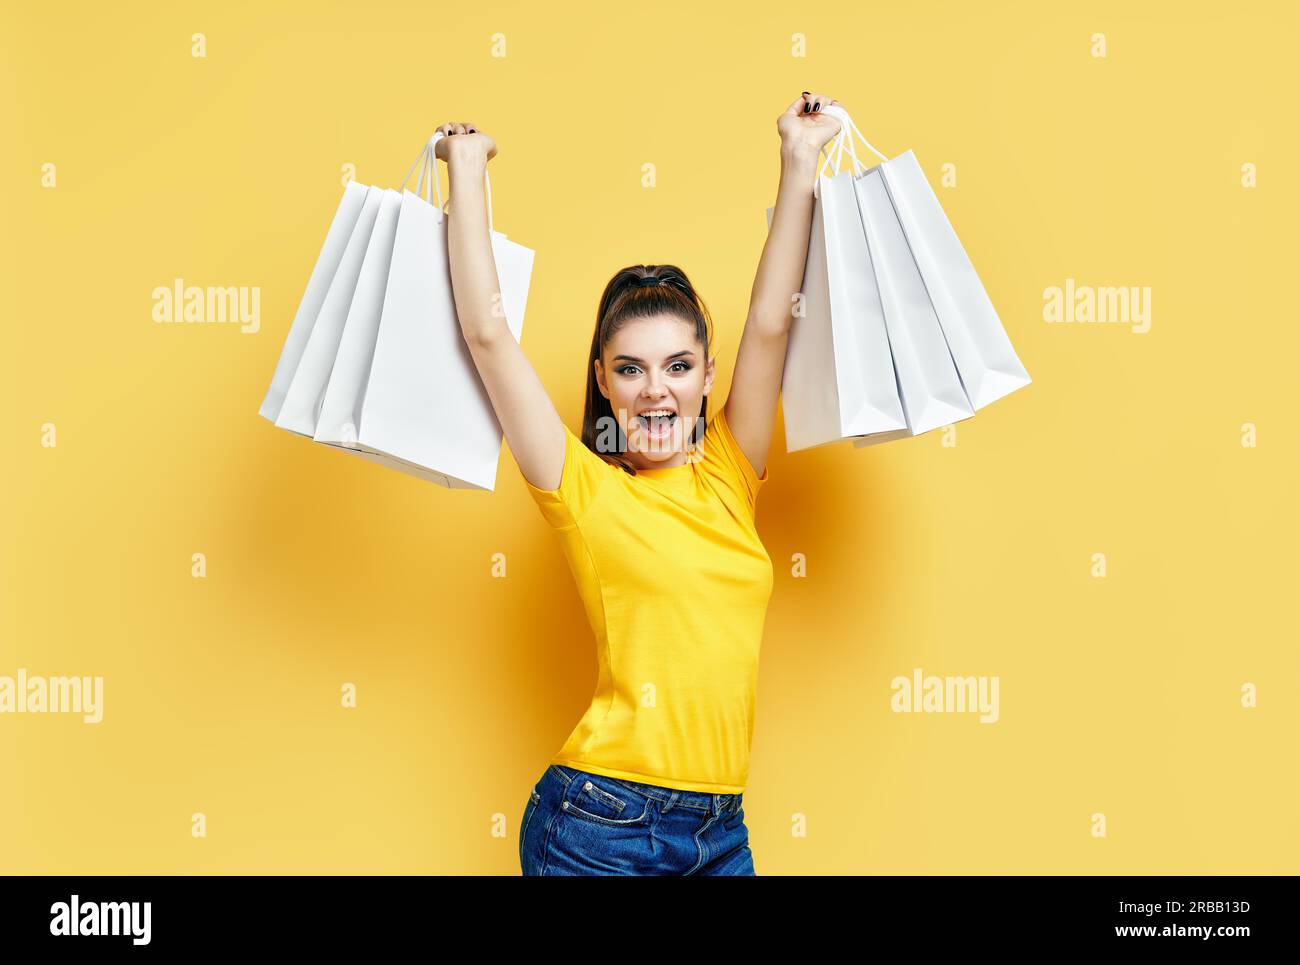 Bonne heureuse excitée shopaholic femme avec des sacs de shopping dans les mains profiter ses achats sur fond jaune Banque D'Images